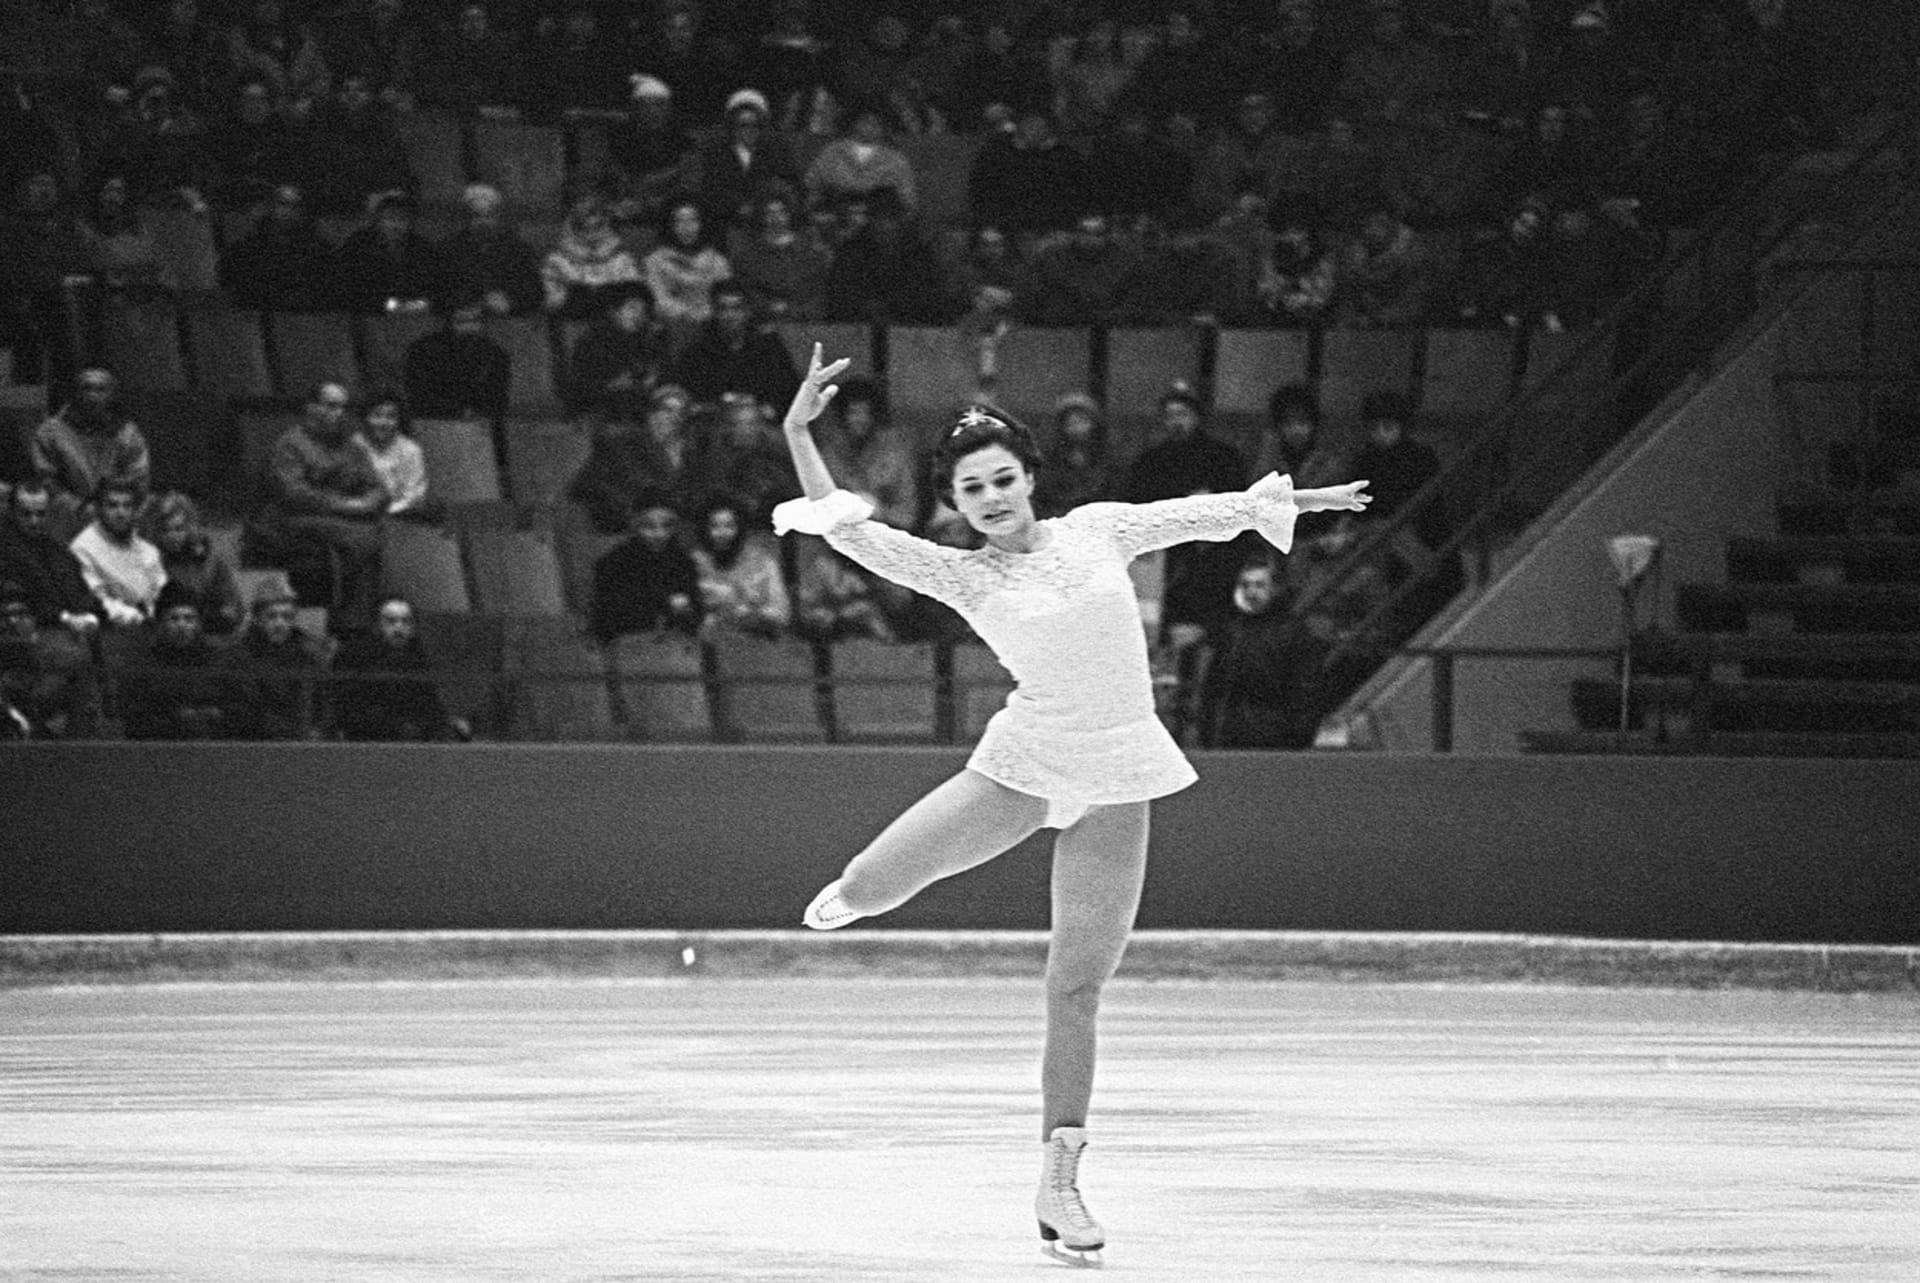  Už ve 14 letech startovala na Zimních olympijských hrách, kde skončila na 15. místě. O čtyři roky později na olympiádě už brala bronzovou medaili. 